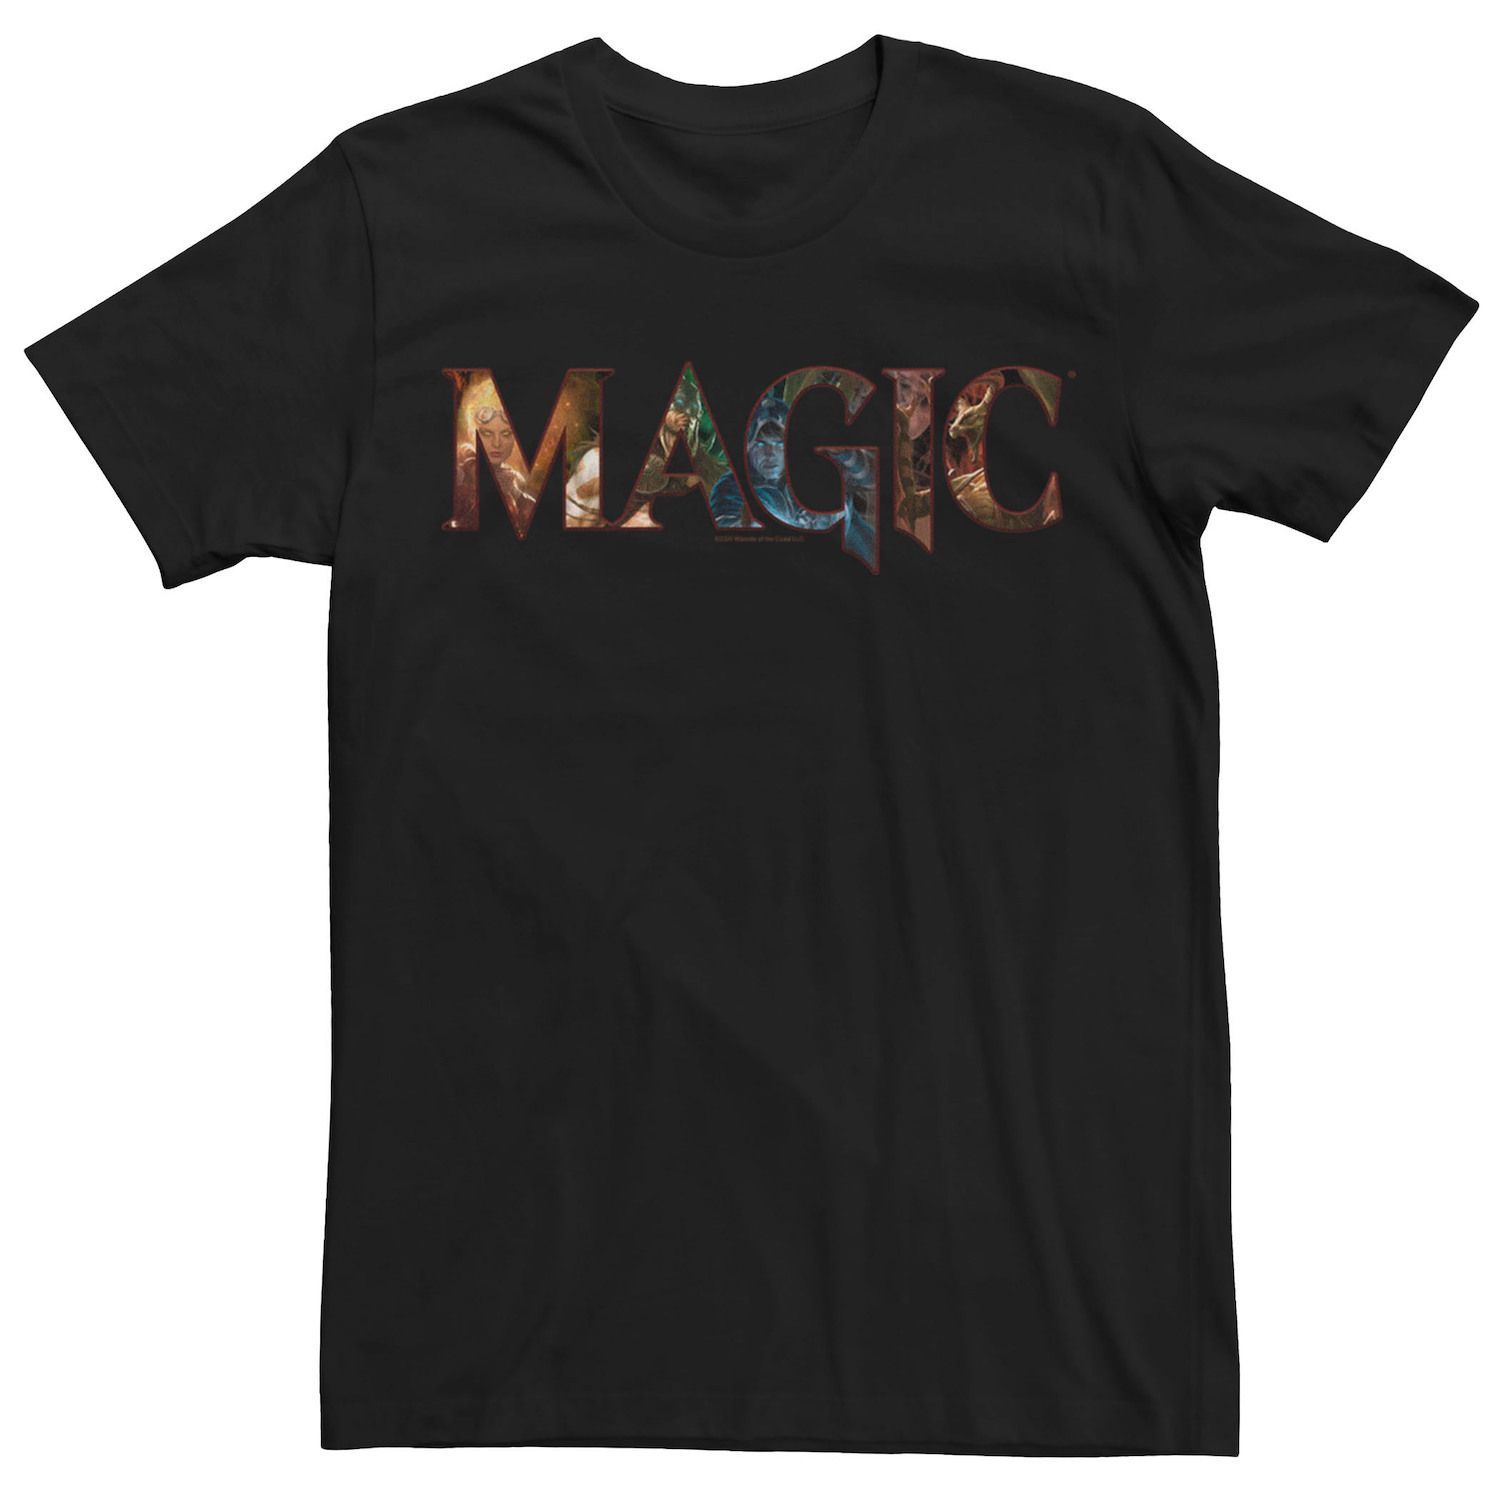 Мужская футболка с логотипом Magic The Gathering Magic Licensed Character